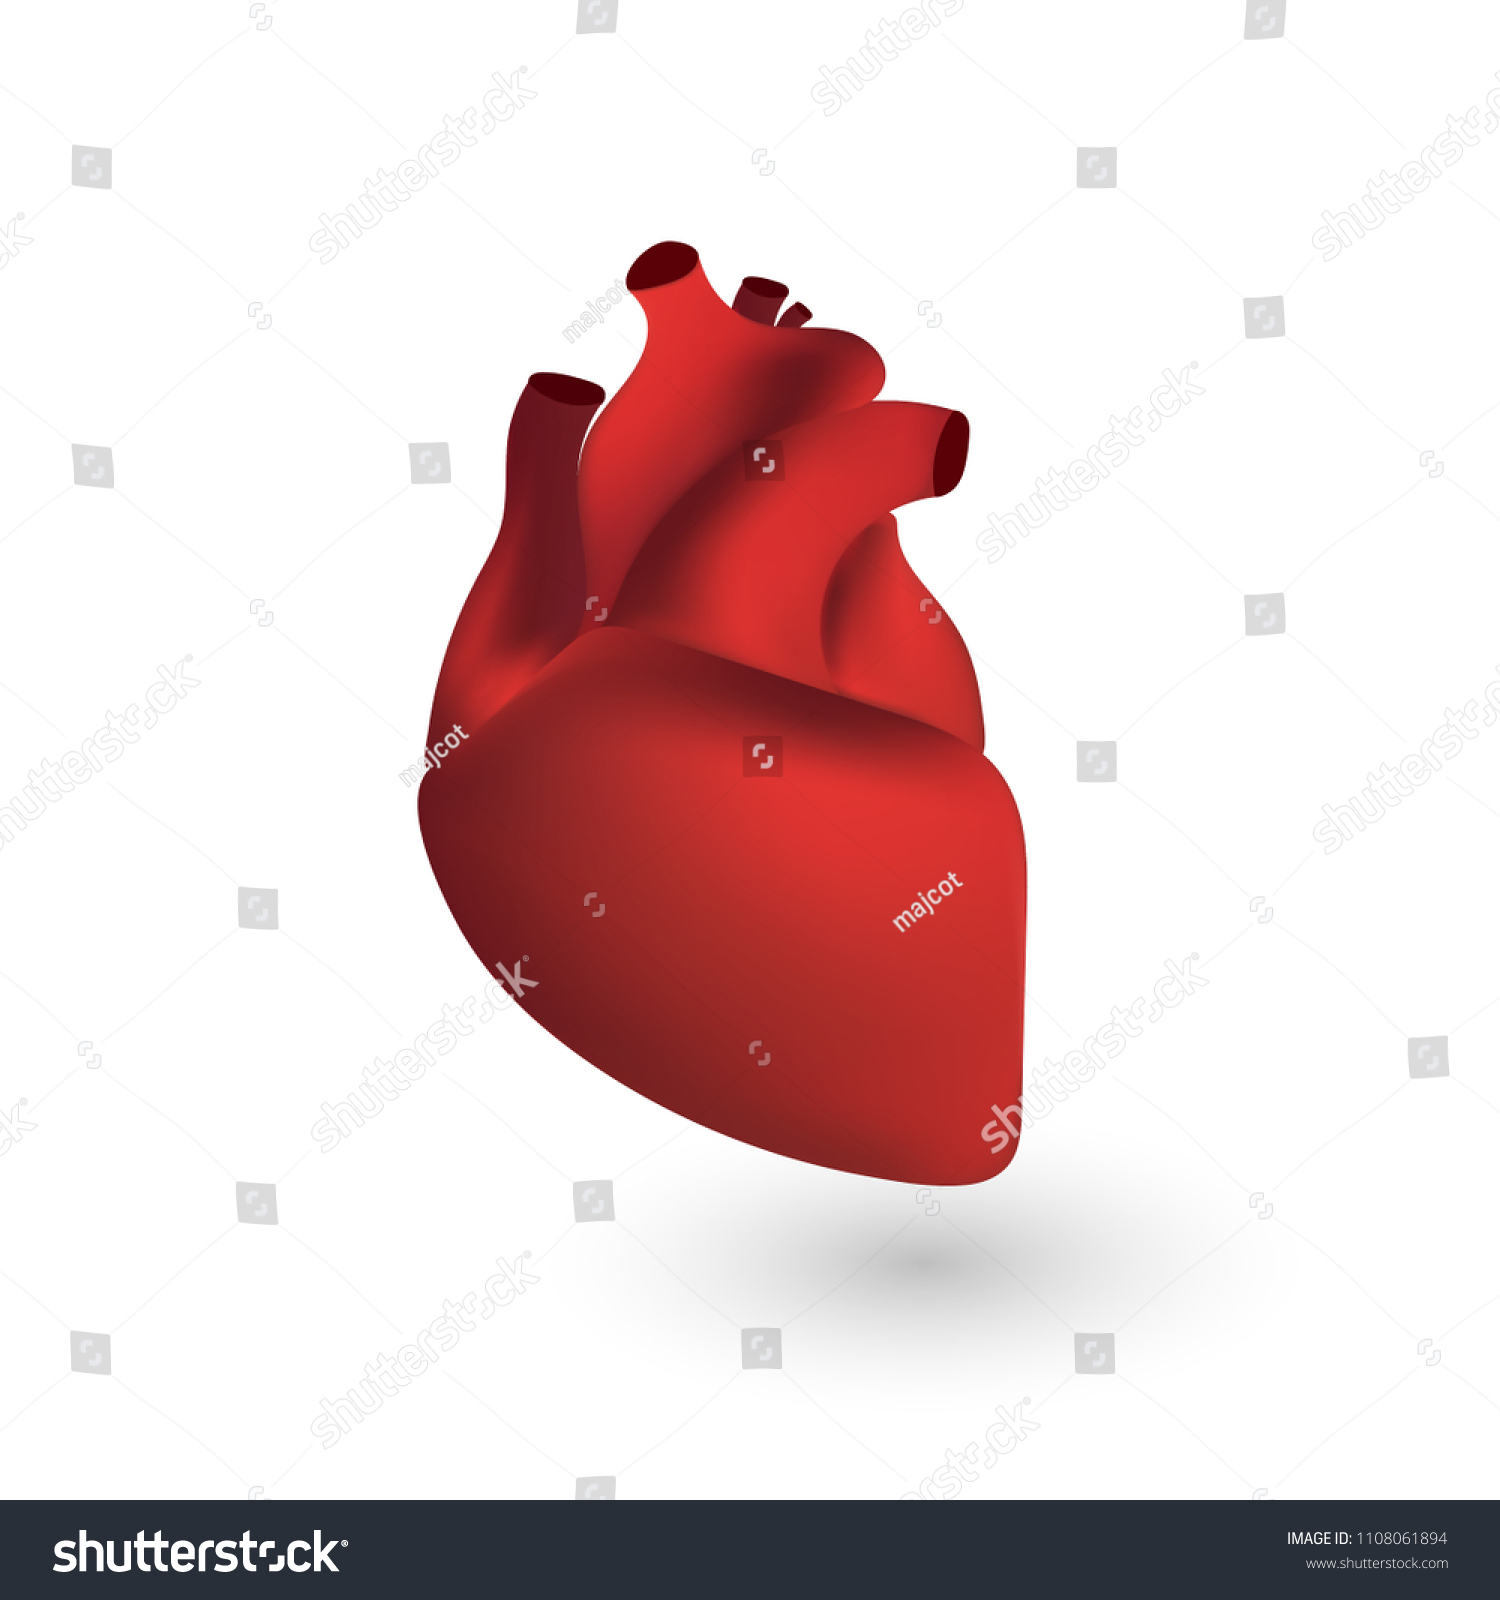 Human Heart Anatomy 3d Illustration Isolated Stock Illustration 1108061894 Shutterstock 0541